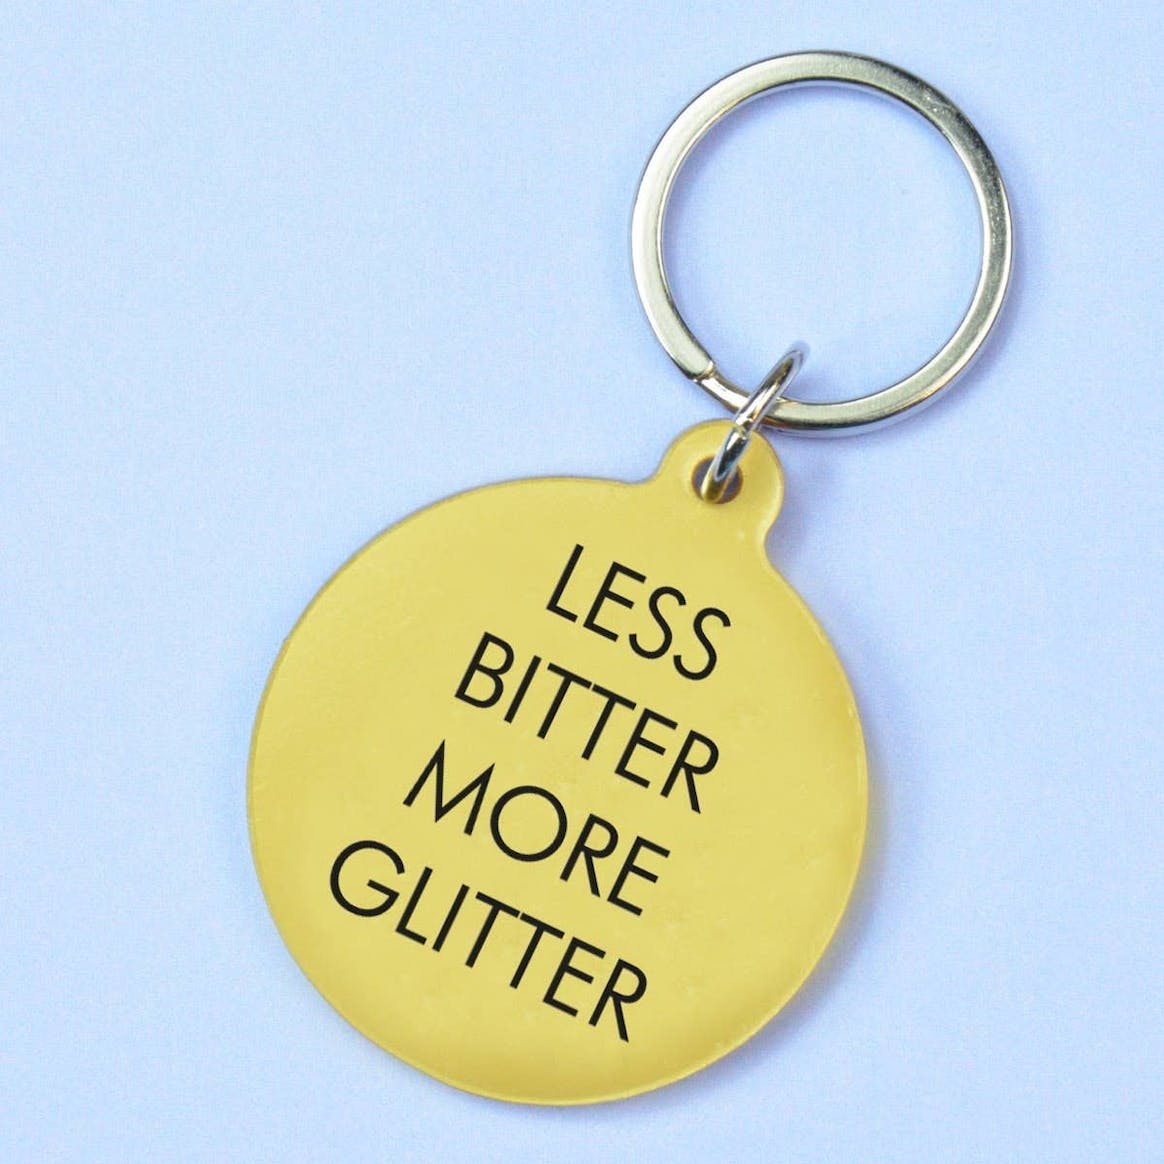 Schlüsselanhänger "Less Bitter more glitter"